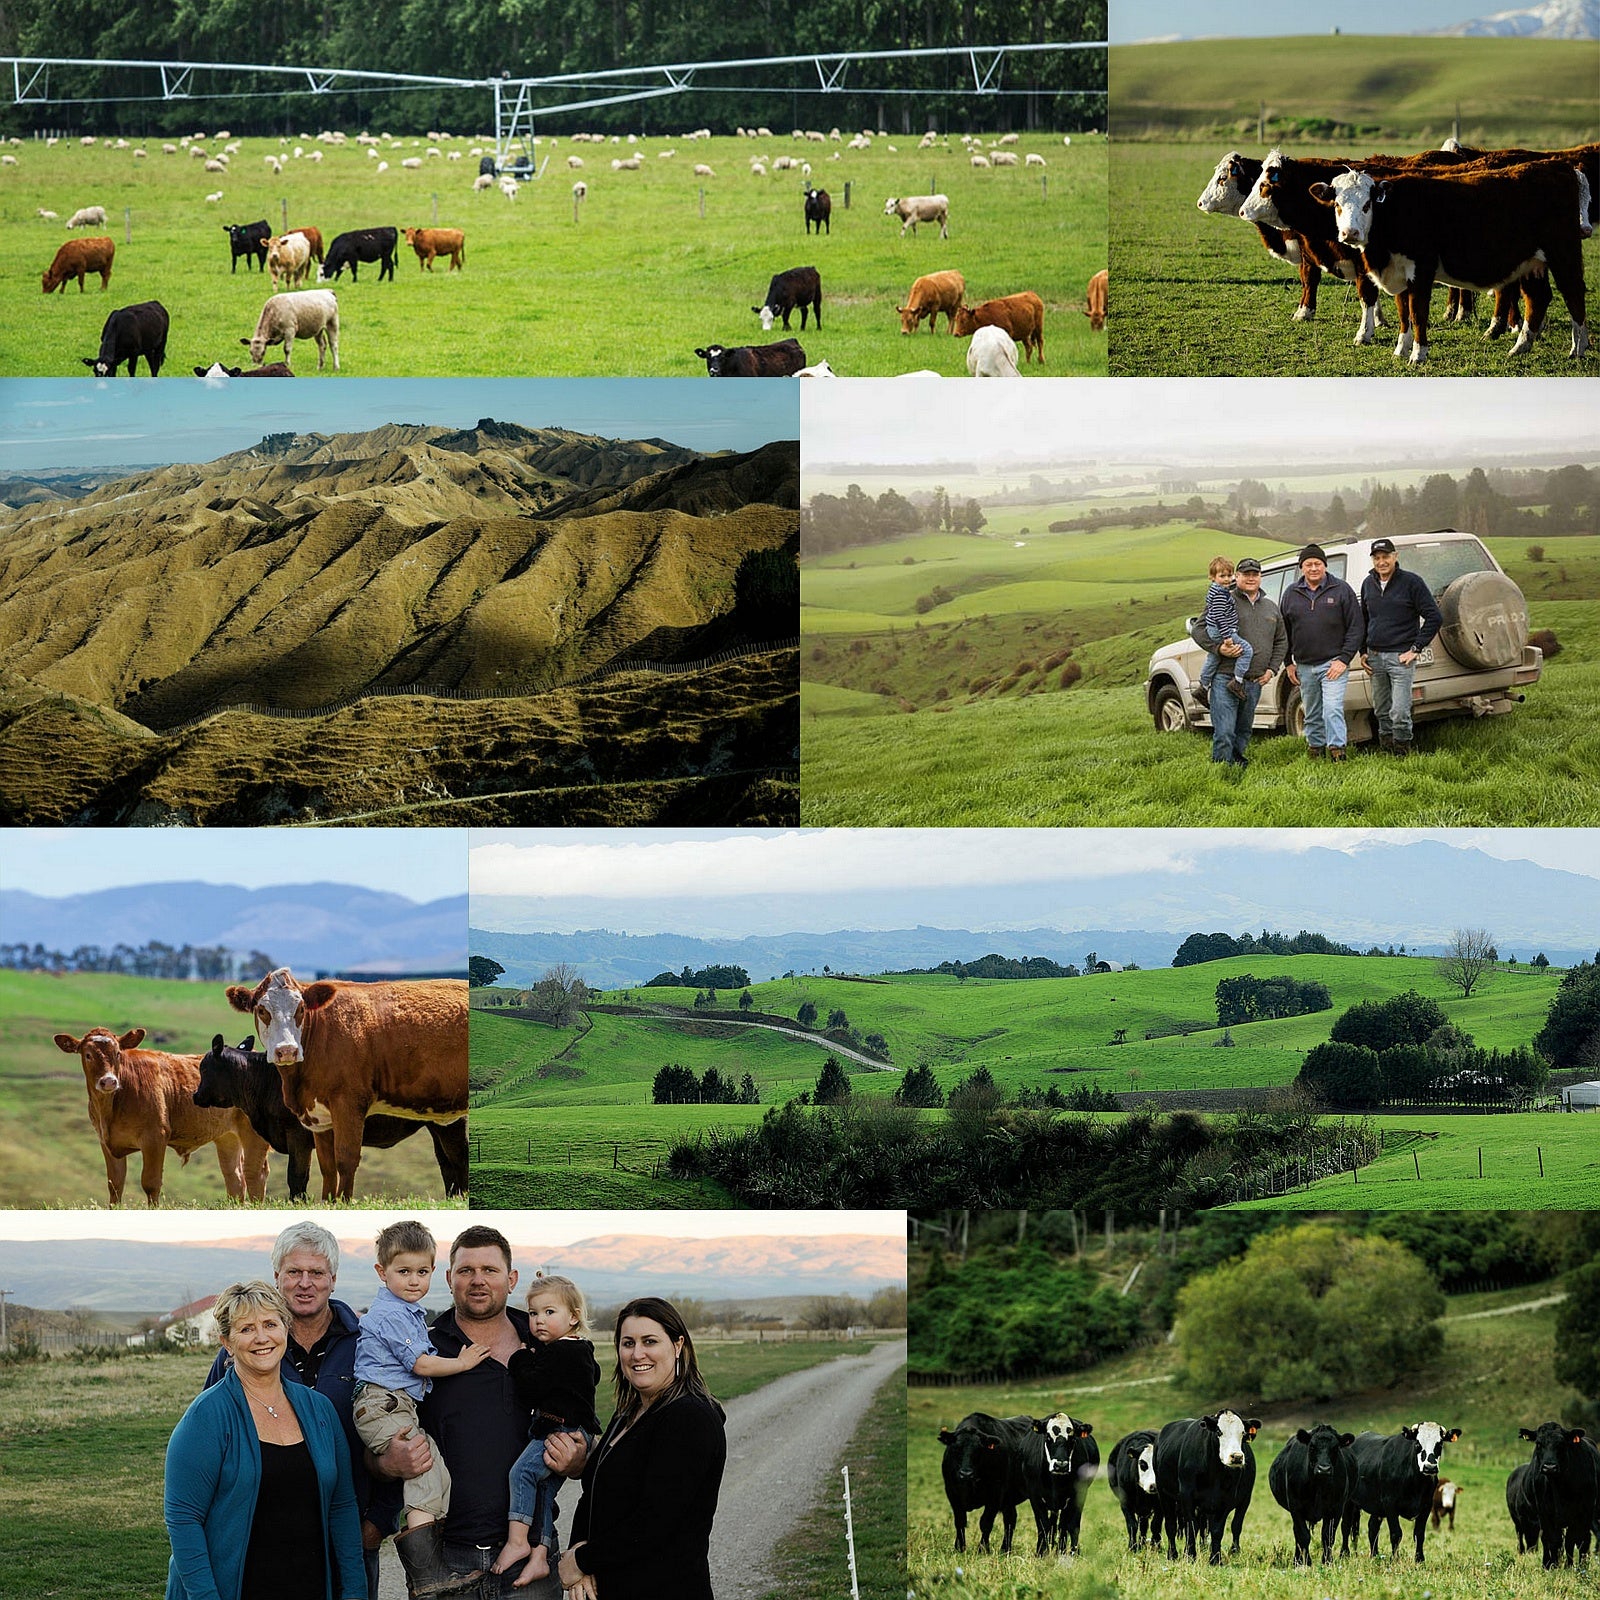 グラスフェッドビーフ 牛肉 シャトーブリアン ヒレ ニュージーランド産 牧草牛 (1kg) ホライズンファームズ